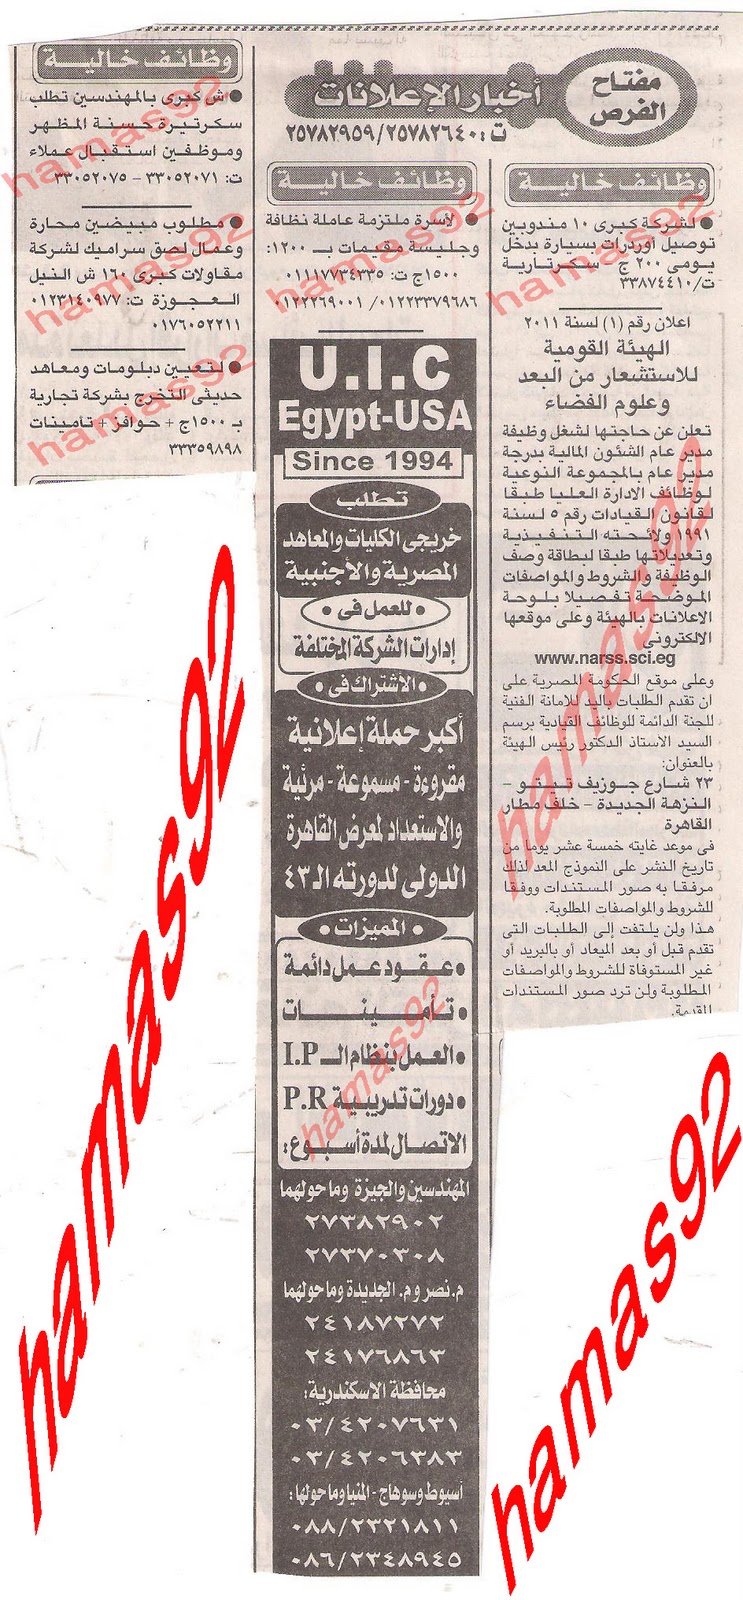 وظائف فى مصر الاربعاء 16\11\2011 وظائف جريدة الاخبار الاربعاء 16 نوفمبر 2011 Picture+001